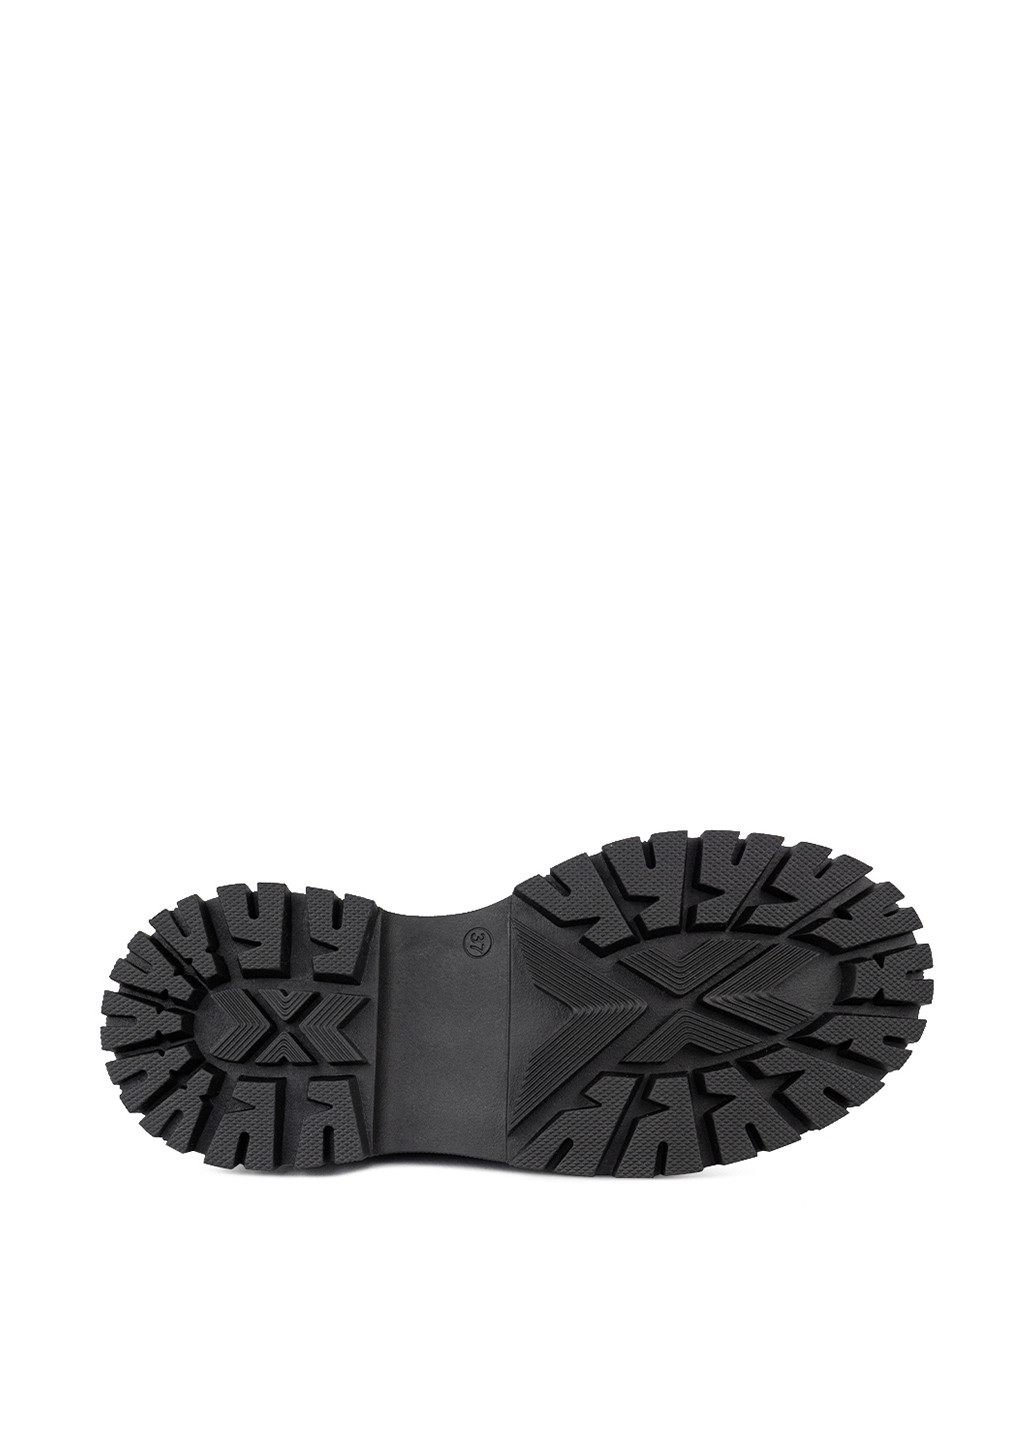 Осенние ботинки челси Alromaro с цепочками, на тракторной подошве, лаковые